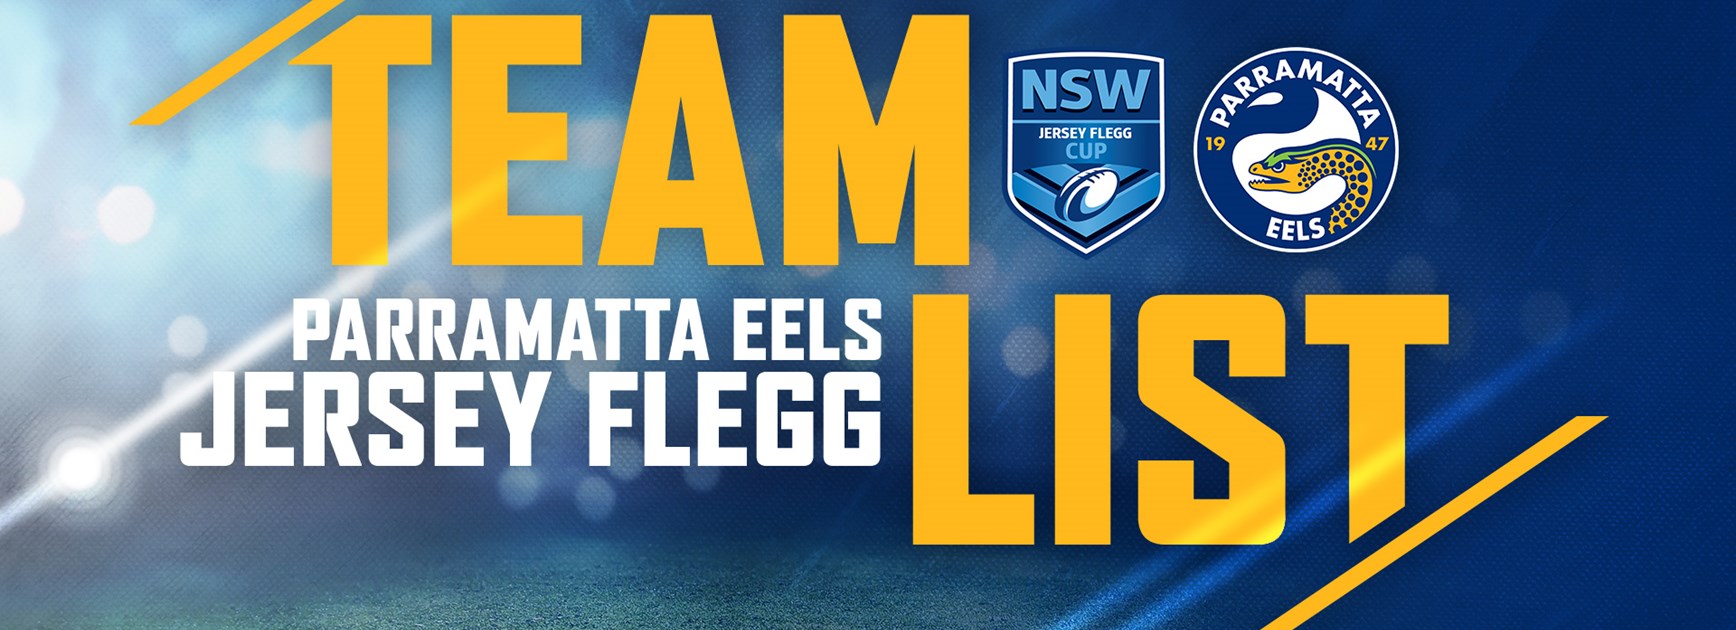 Eels Jersey Flegg Round 15 Team List